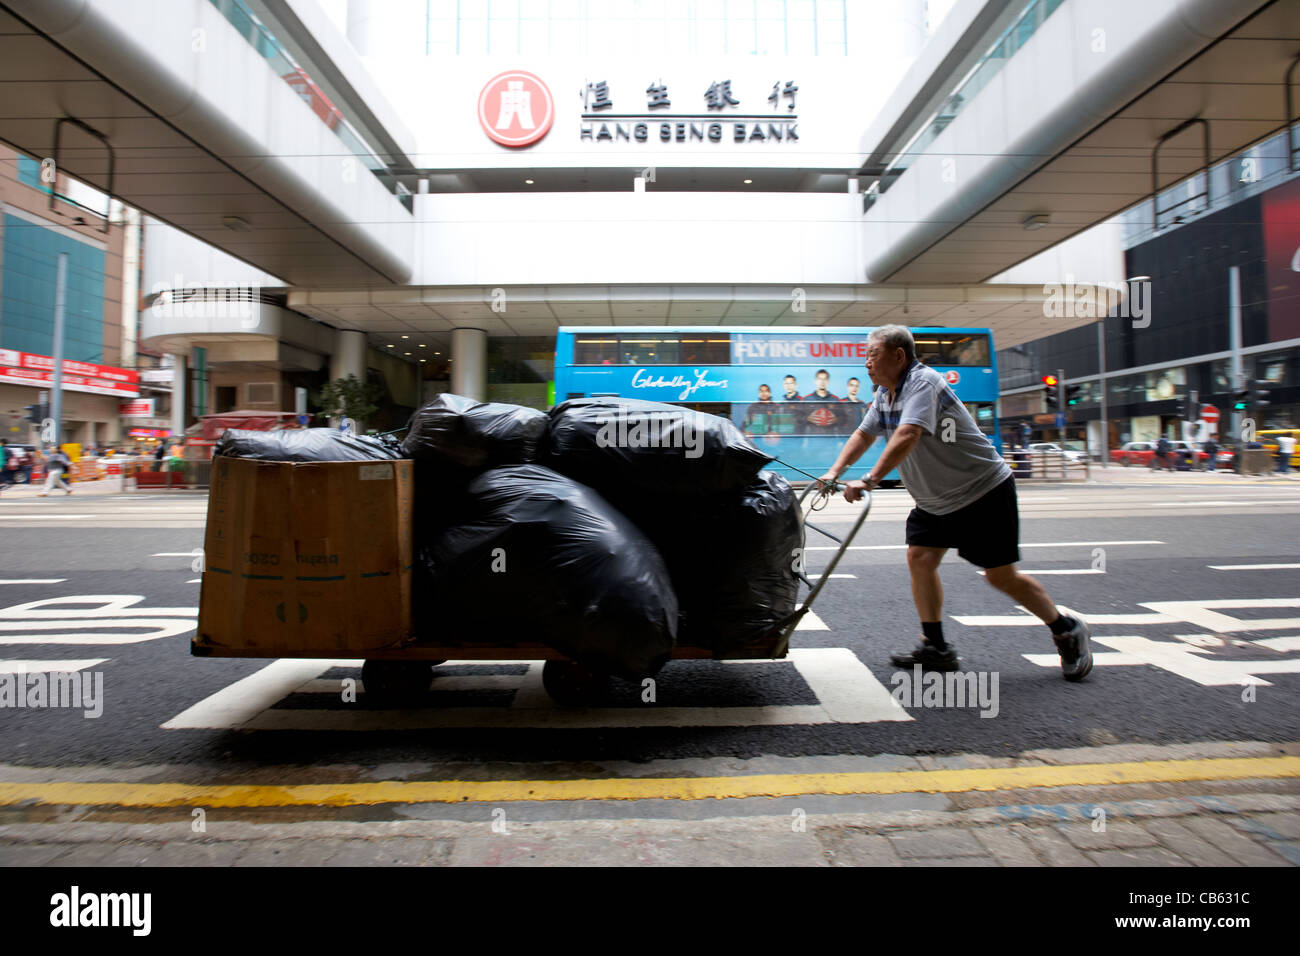 Mann schiebt Lieferung Warenkorb letzten hang Seng Bank hq zentralen Bezirk, Insel Hongkong, Sonderverwaltungsregion Hongkong, China absichtlich Bewegungsunschärfe Stockfoto